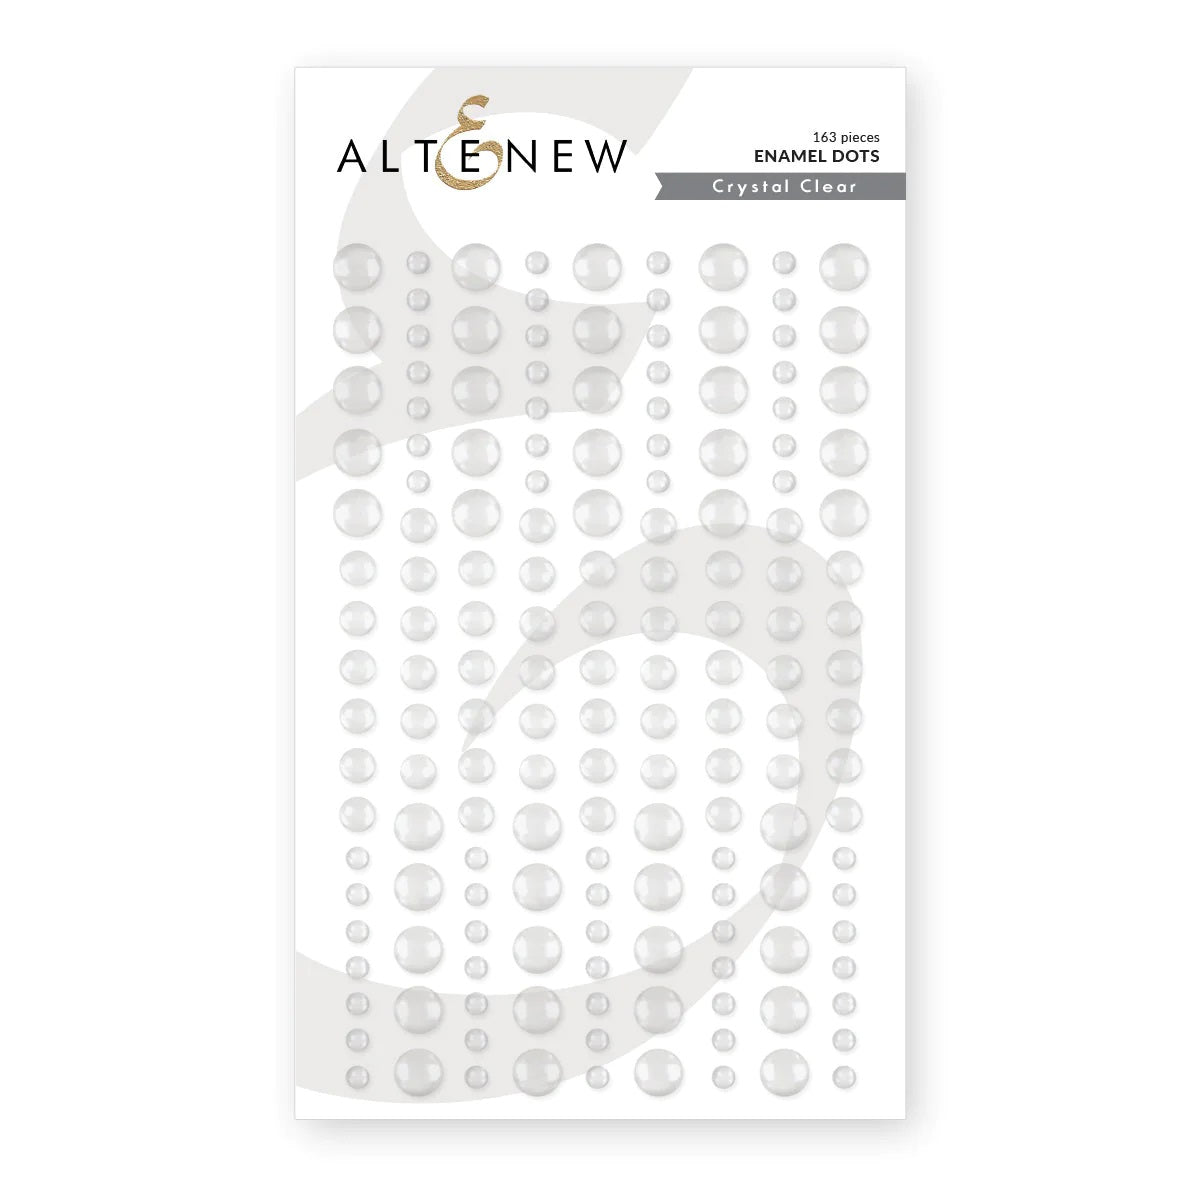 Altenew - Crystal Clear Enamel Dots - The Crafty Kiwi